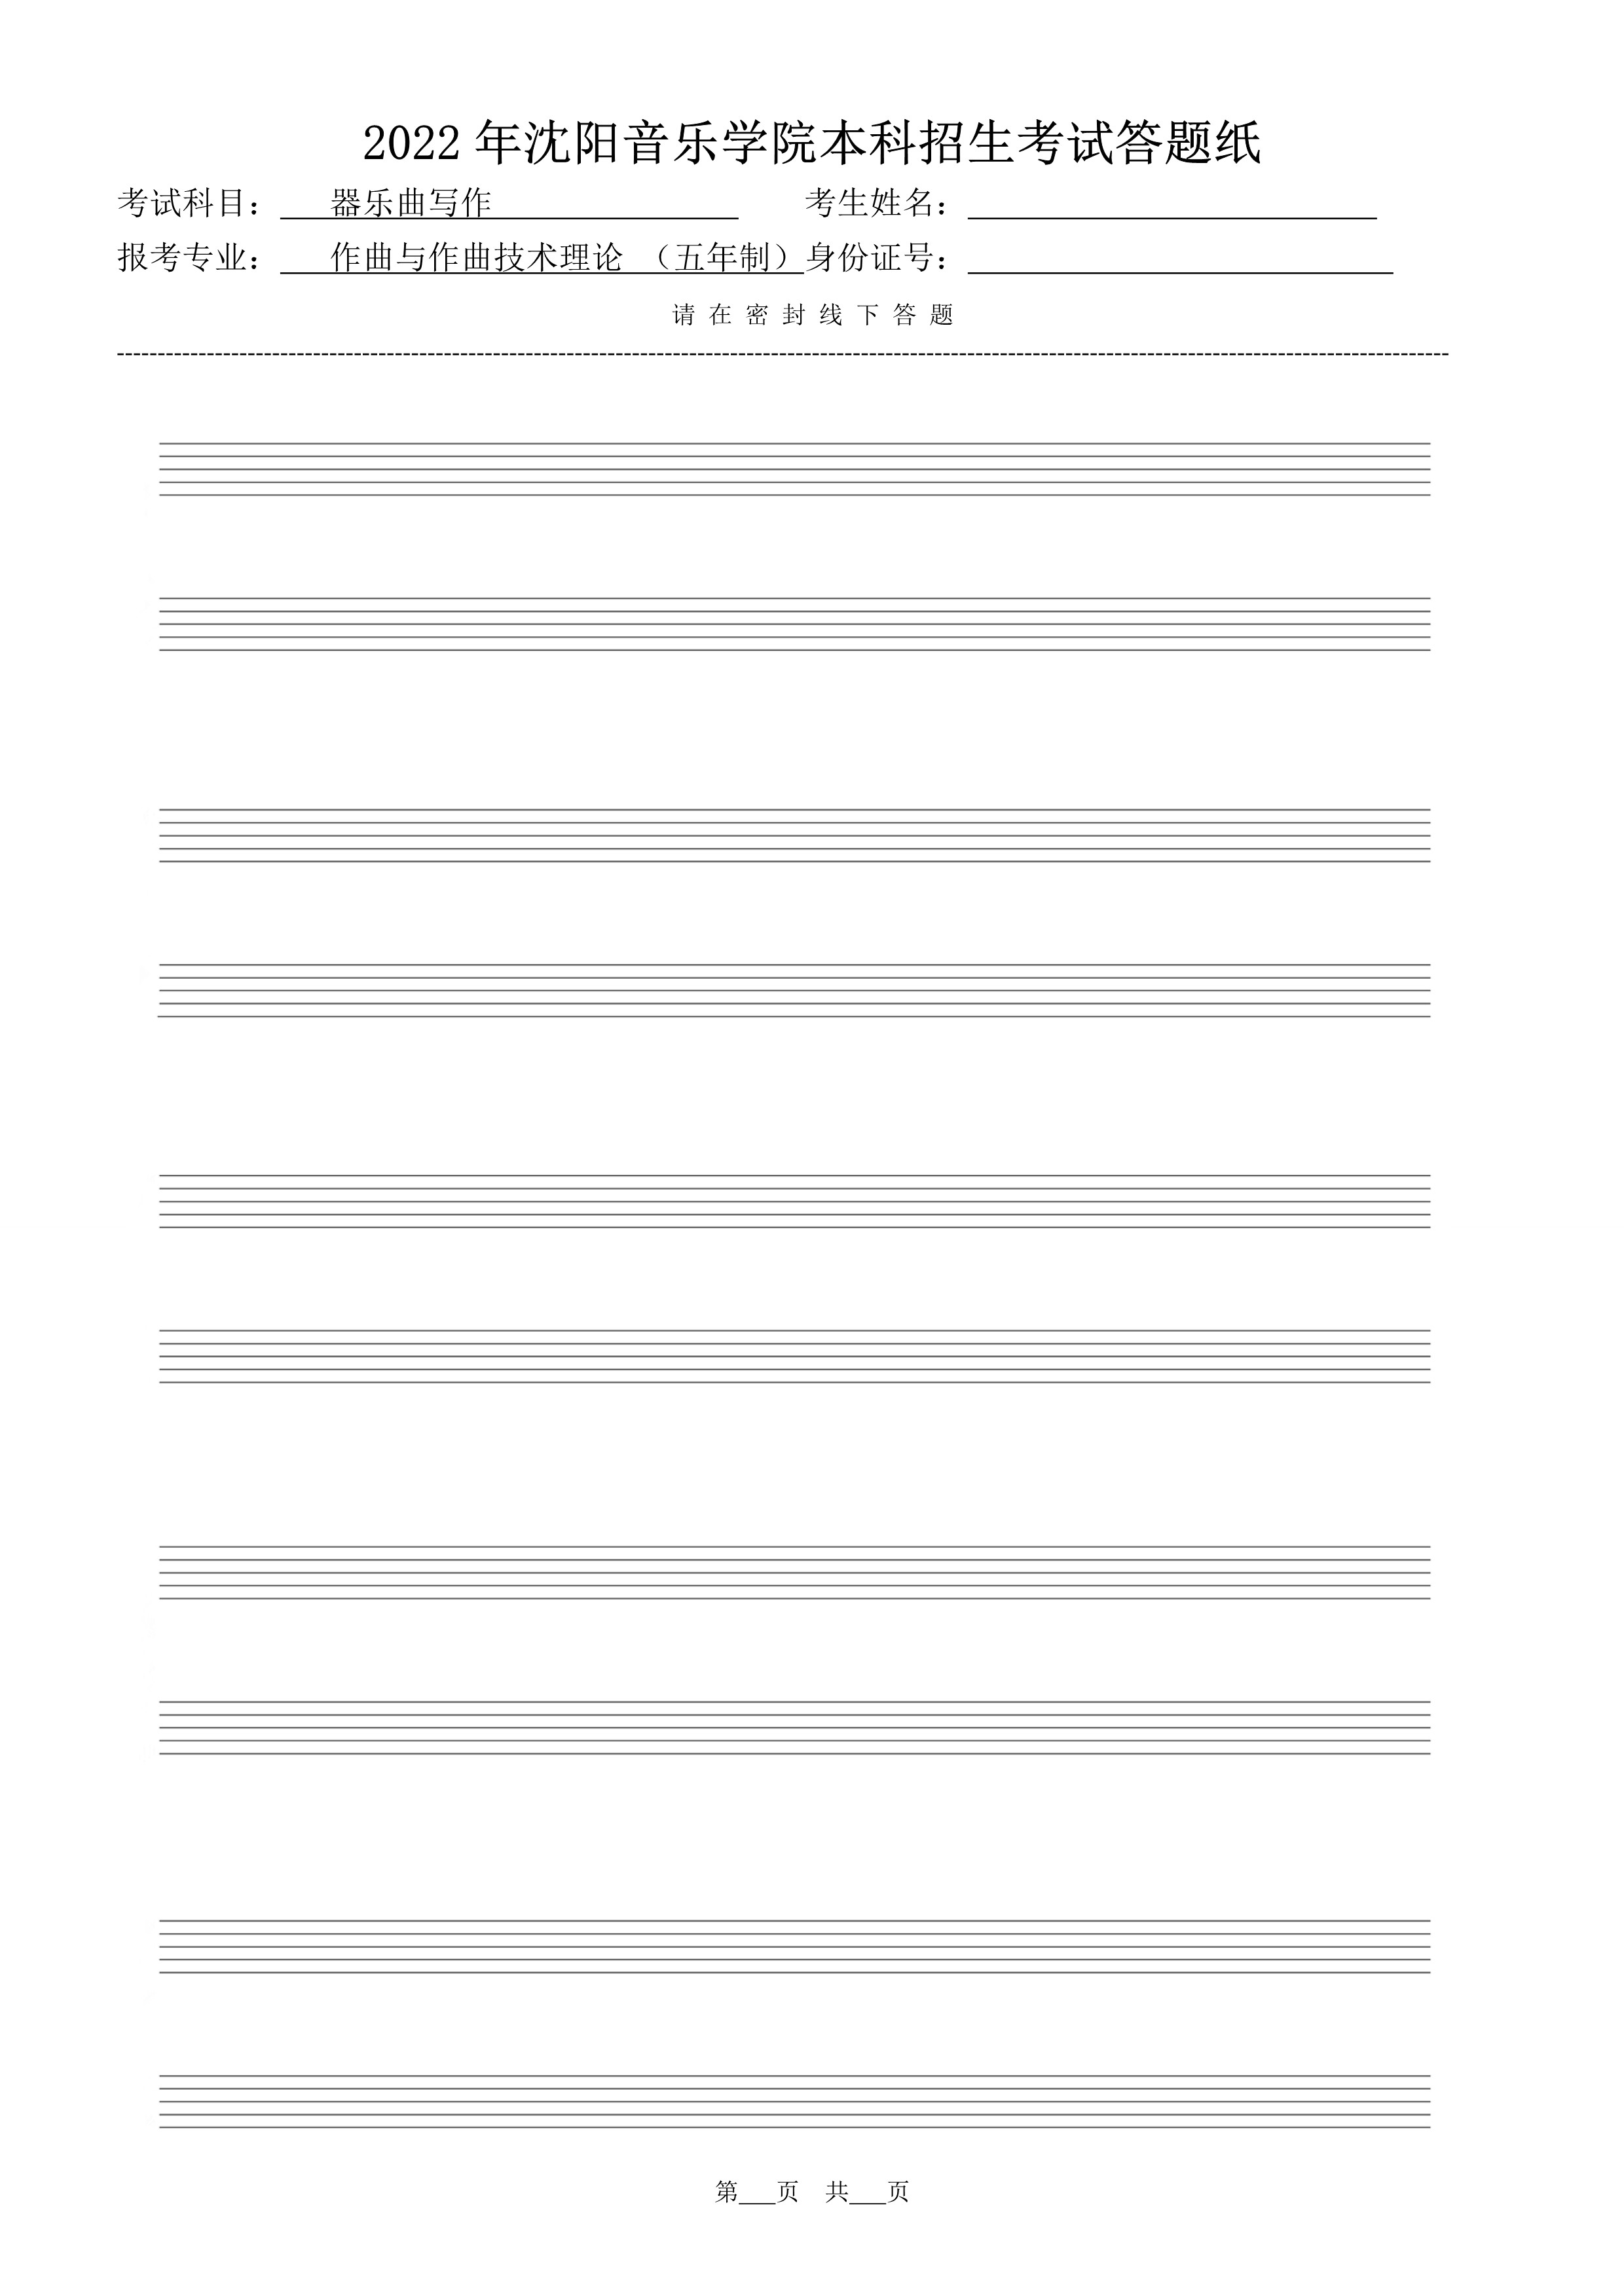 复试器乐曲写作答题纸（共10张）_3.jpg